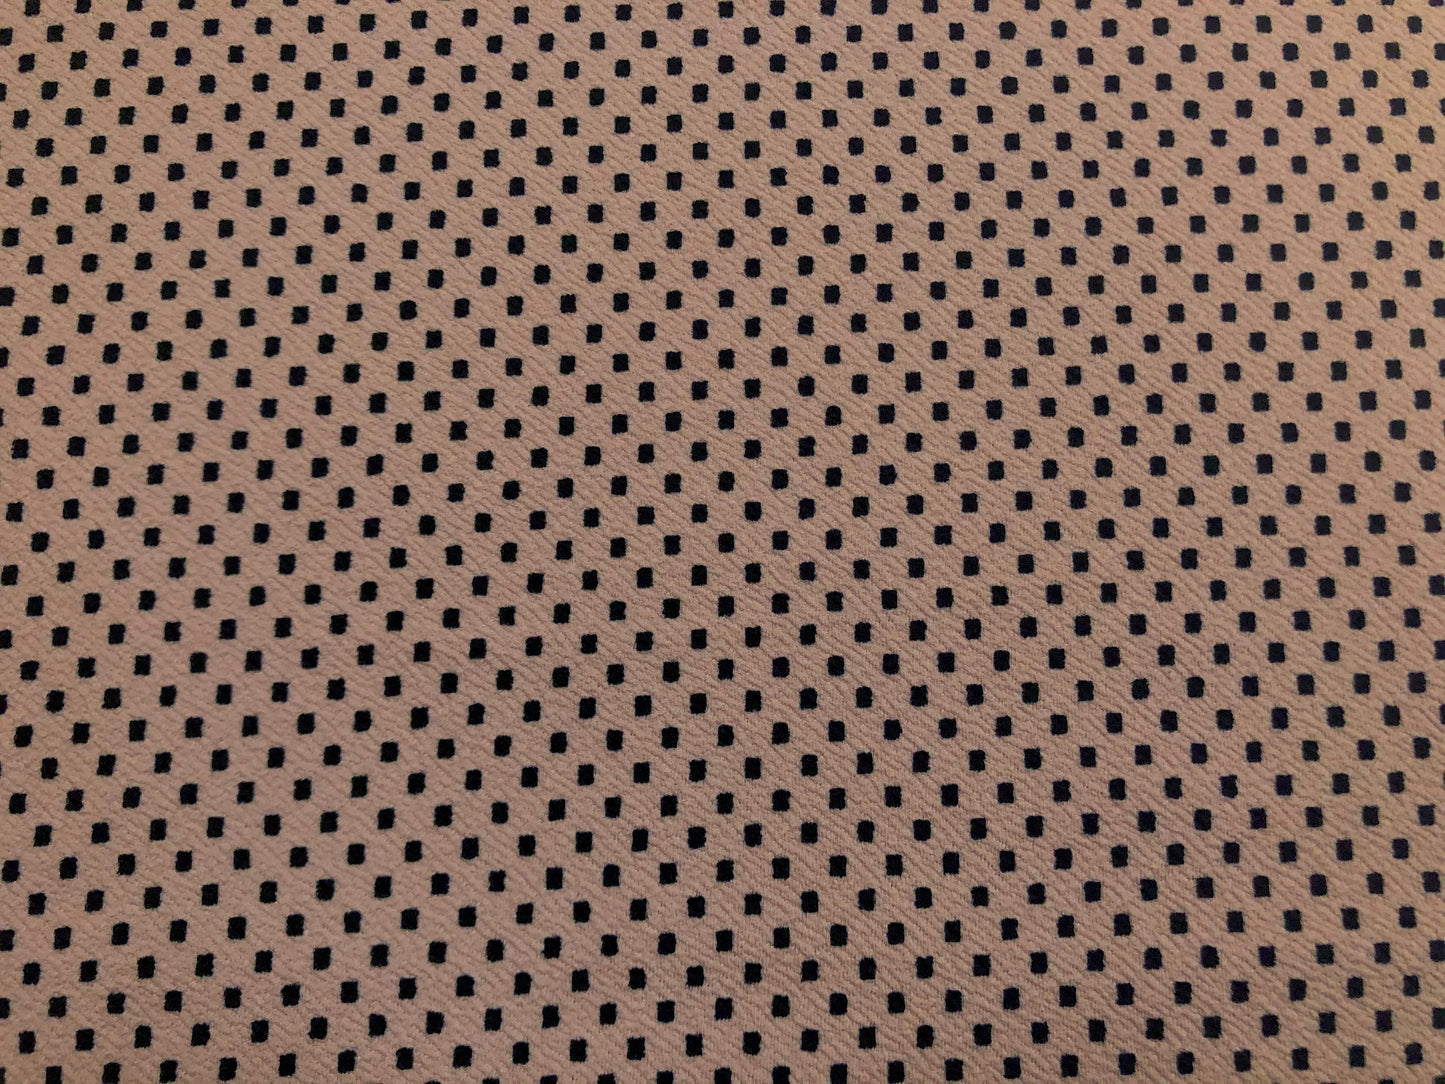 Mauve Black Polka Dots Liverpool Print Fabric